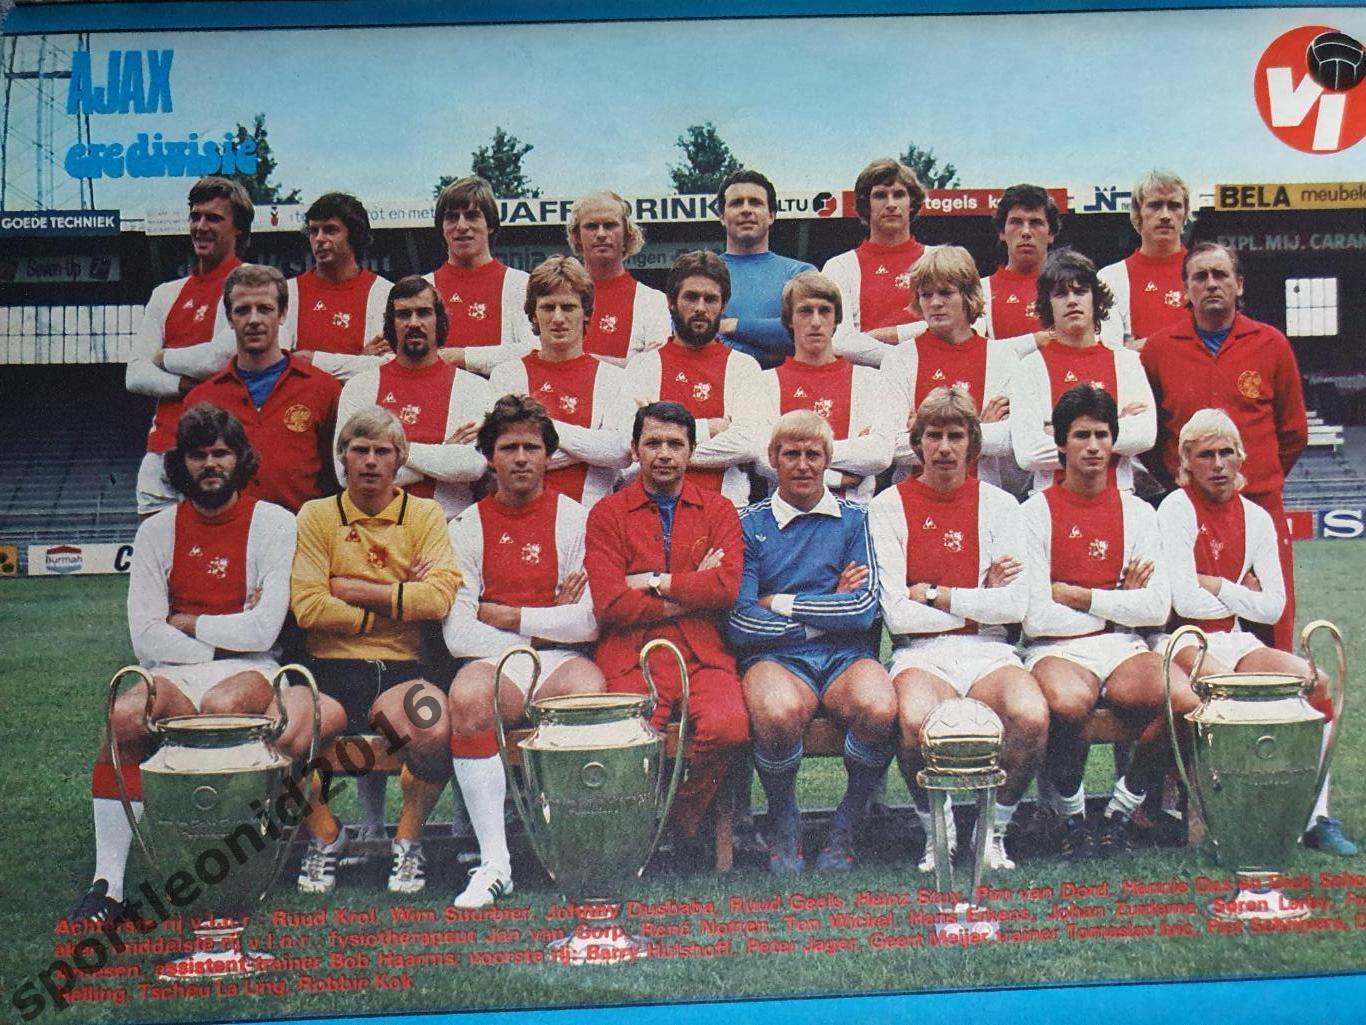 Voetbal International 1977 51 выпуск годовая подписка .Обобщённый). 2